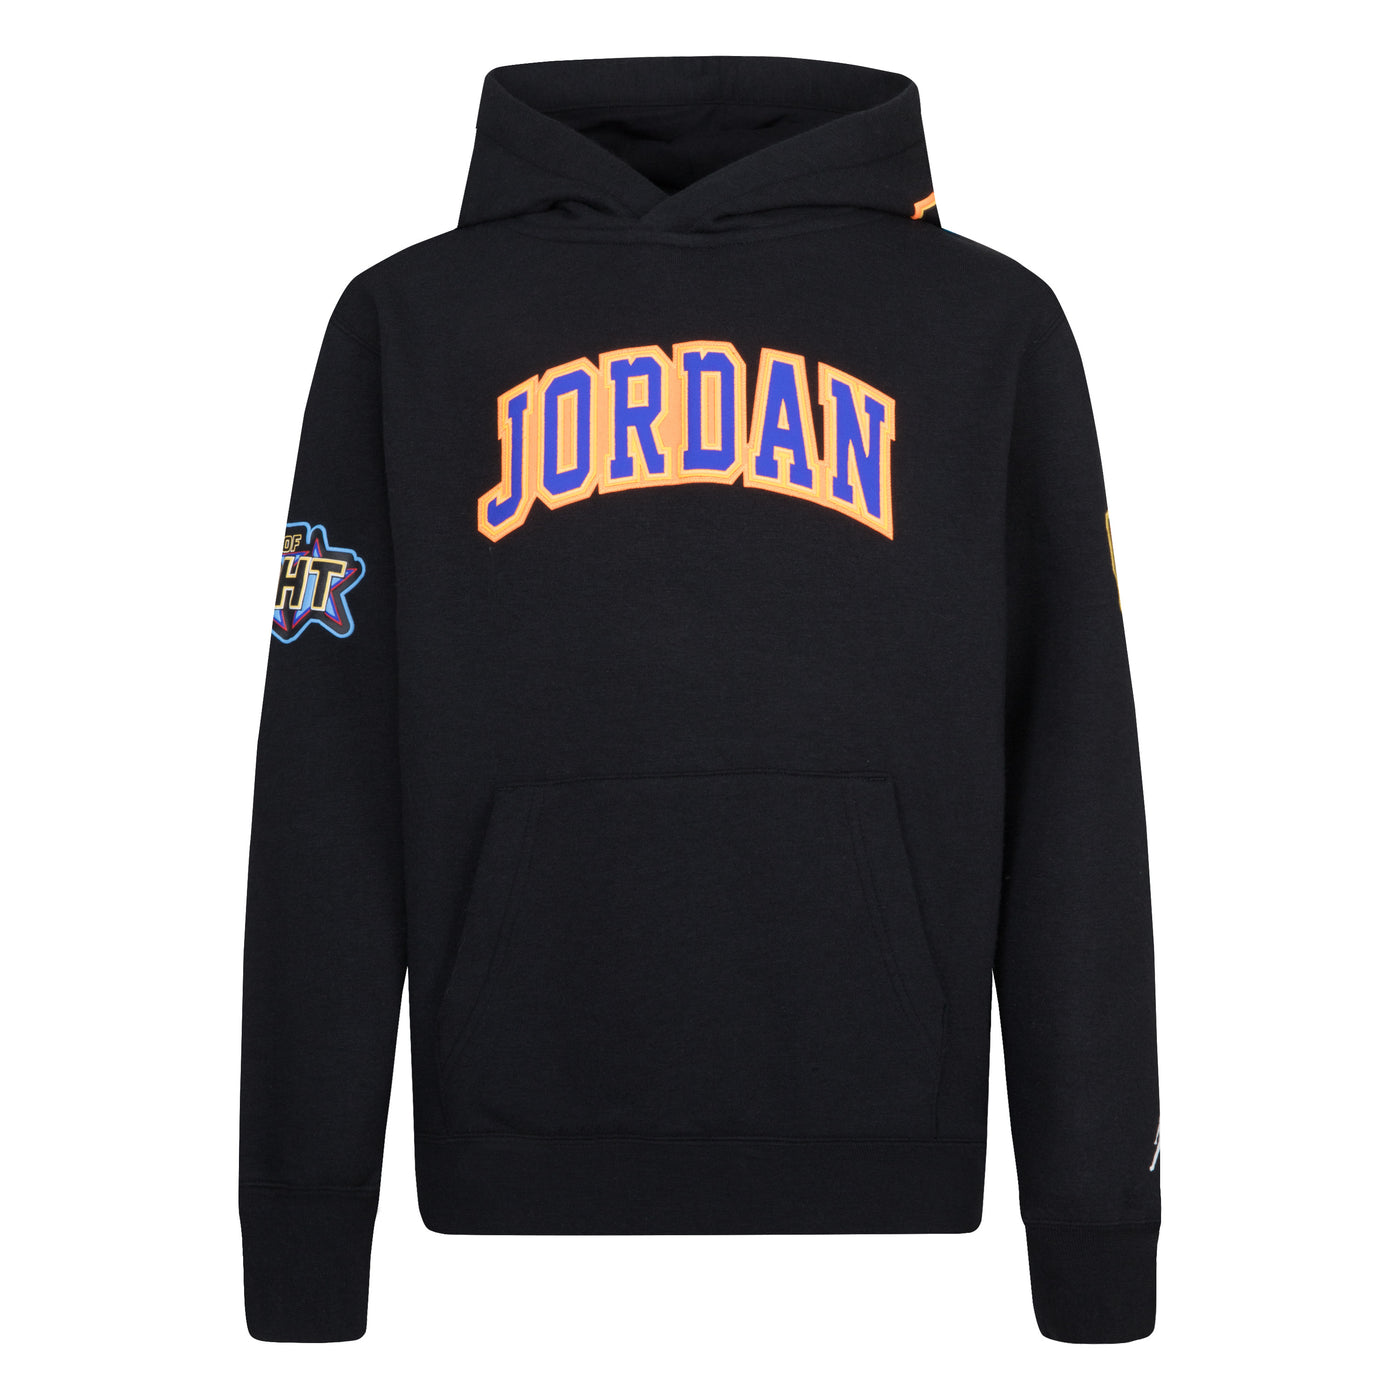 Jordan Black Jp Pack Pullover Hoodie